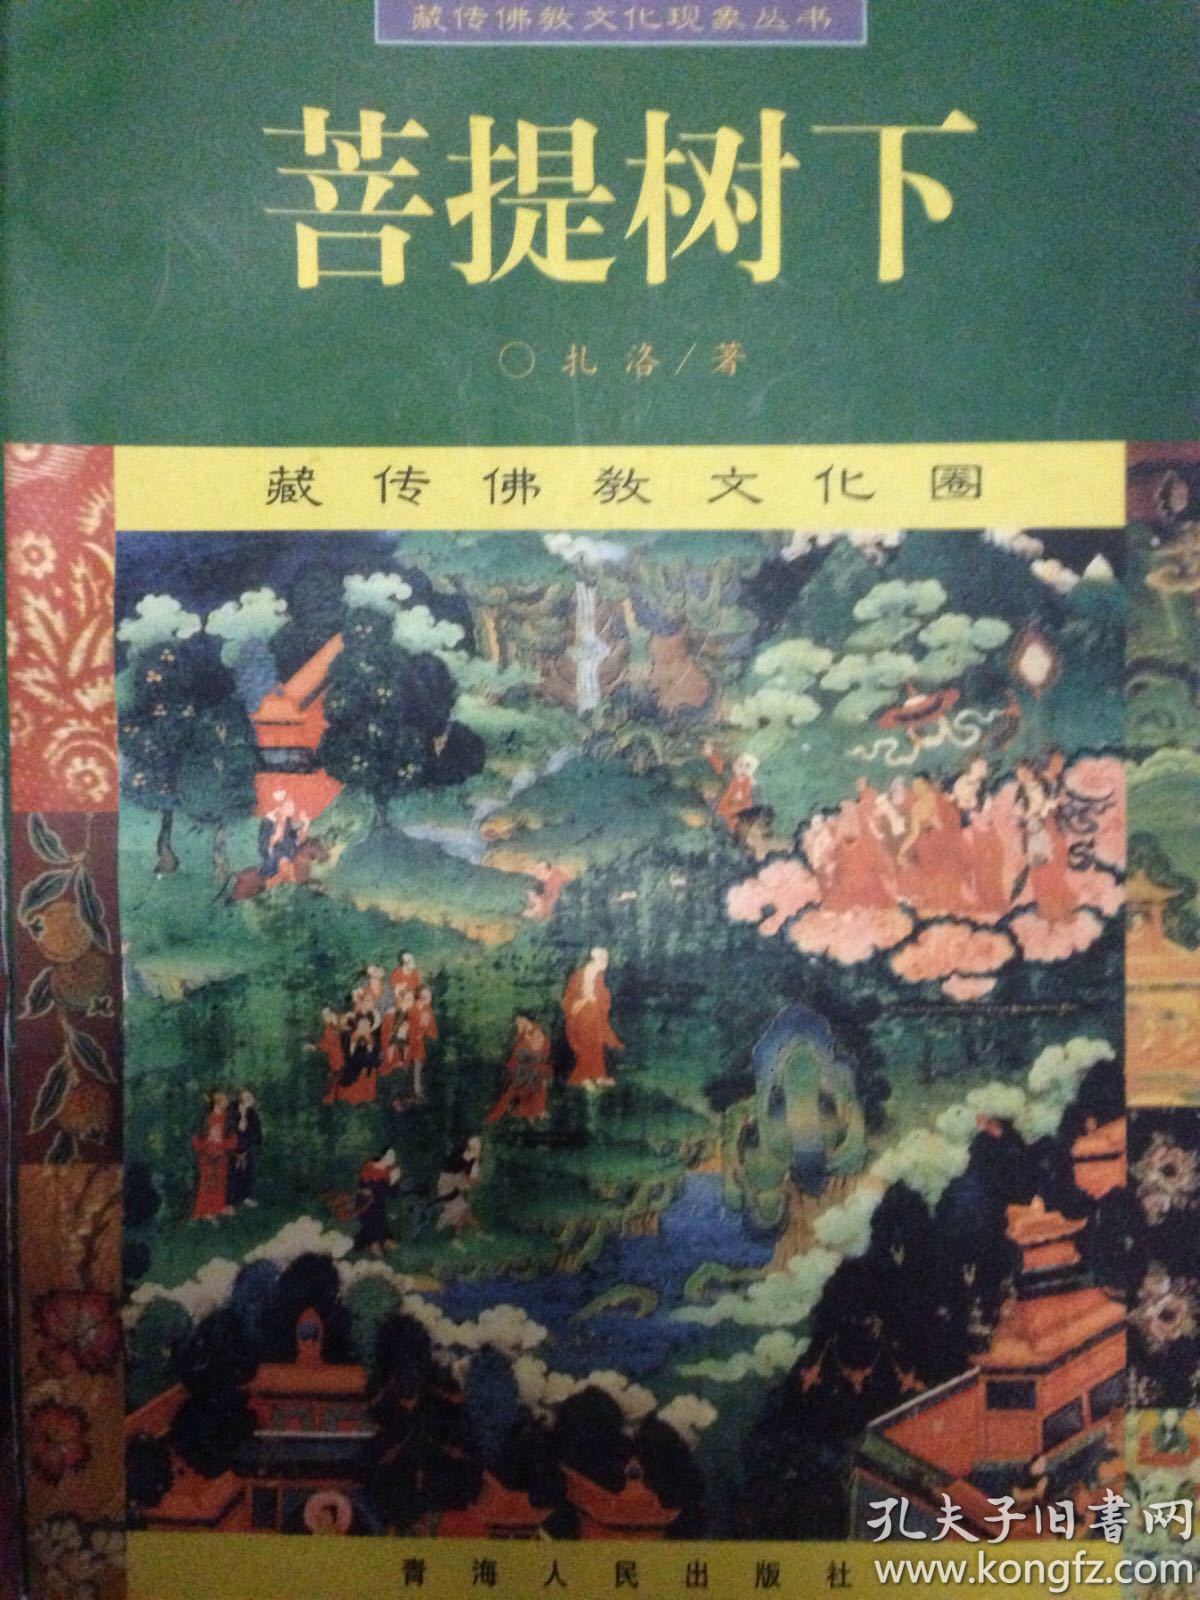 菩 提树下 藏传佛教文化现象丛书